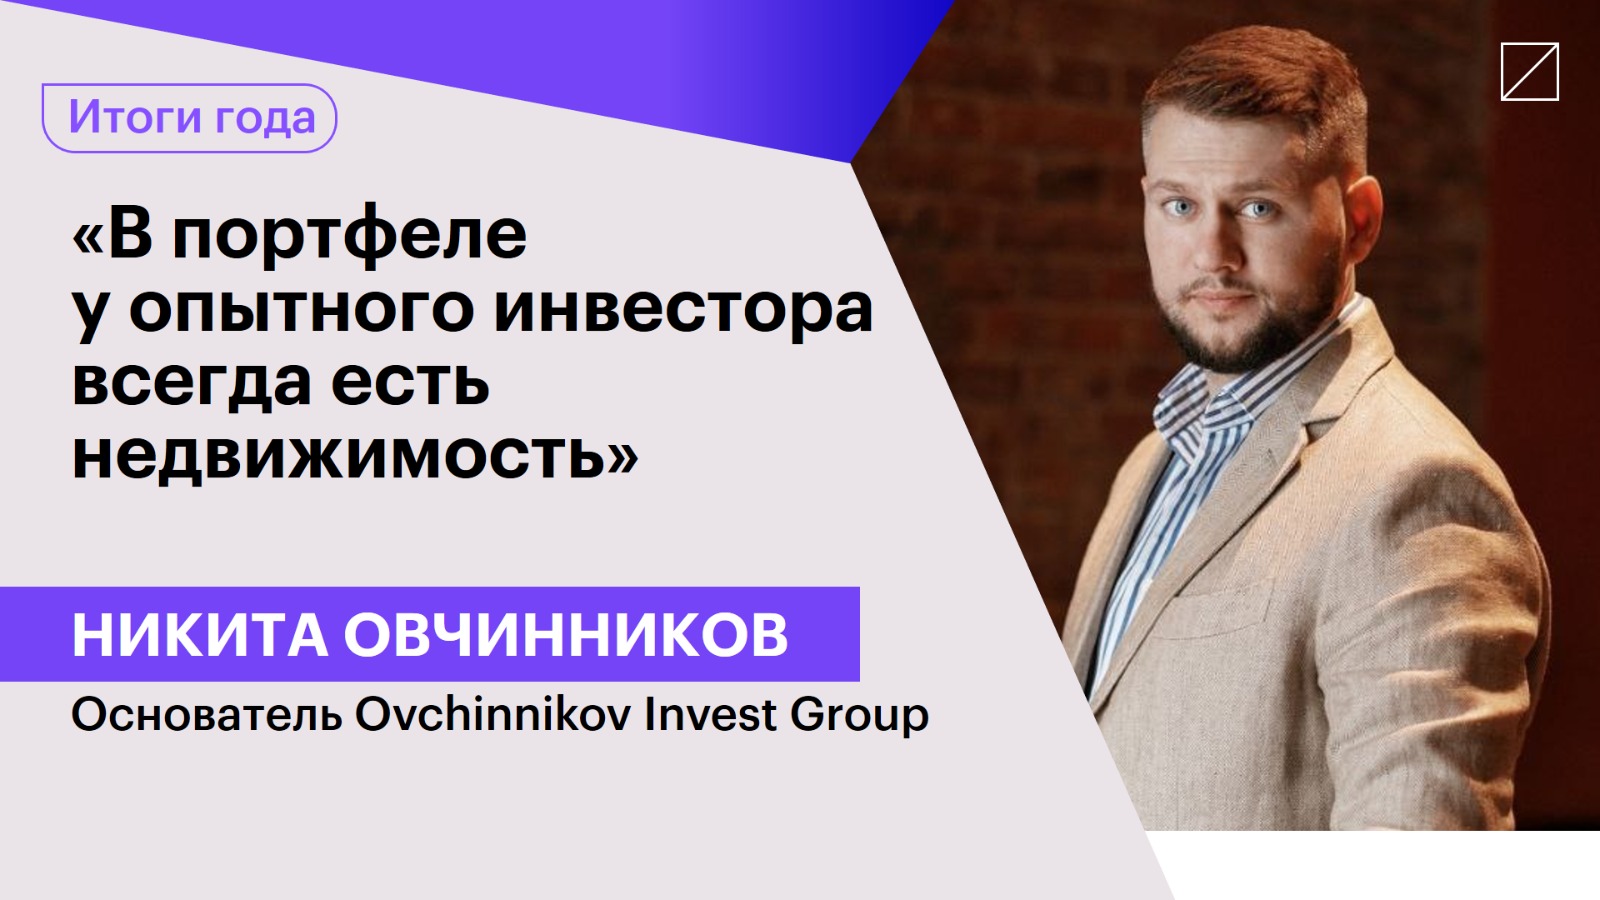 Никита Овчинников: «В портфеле у опытного инвестора всегда есть недвижимость»